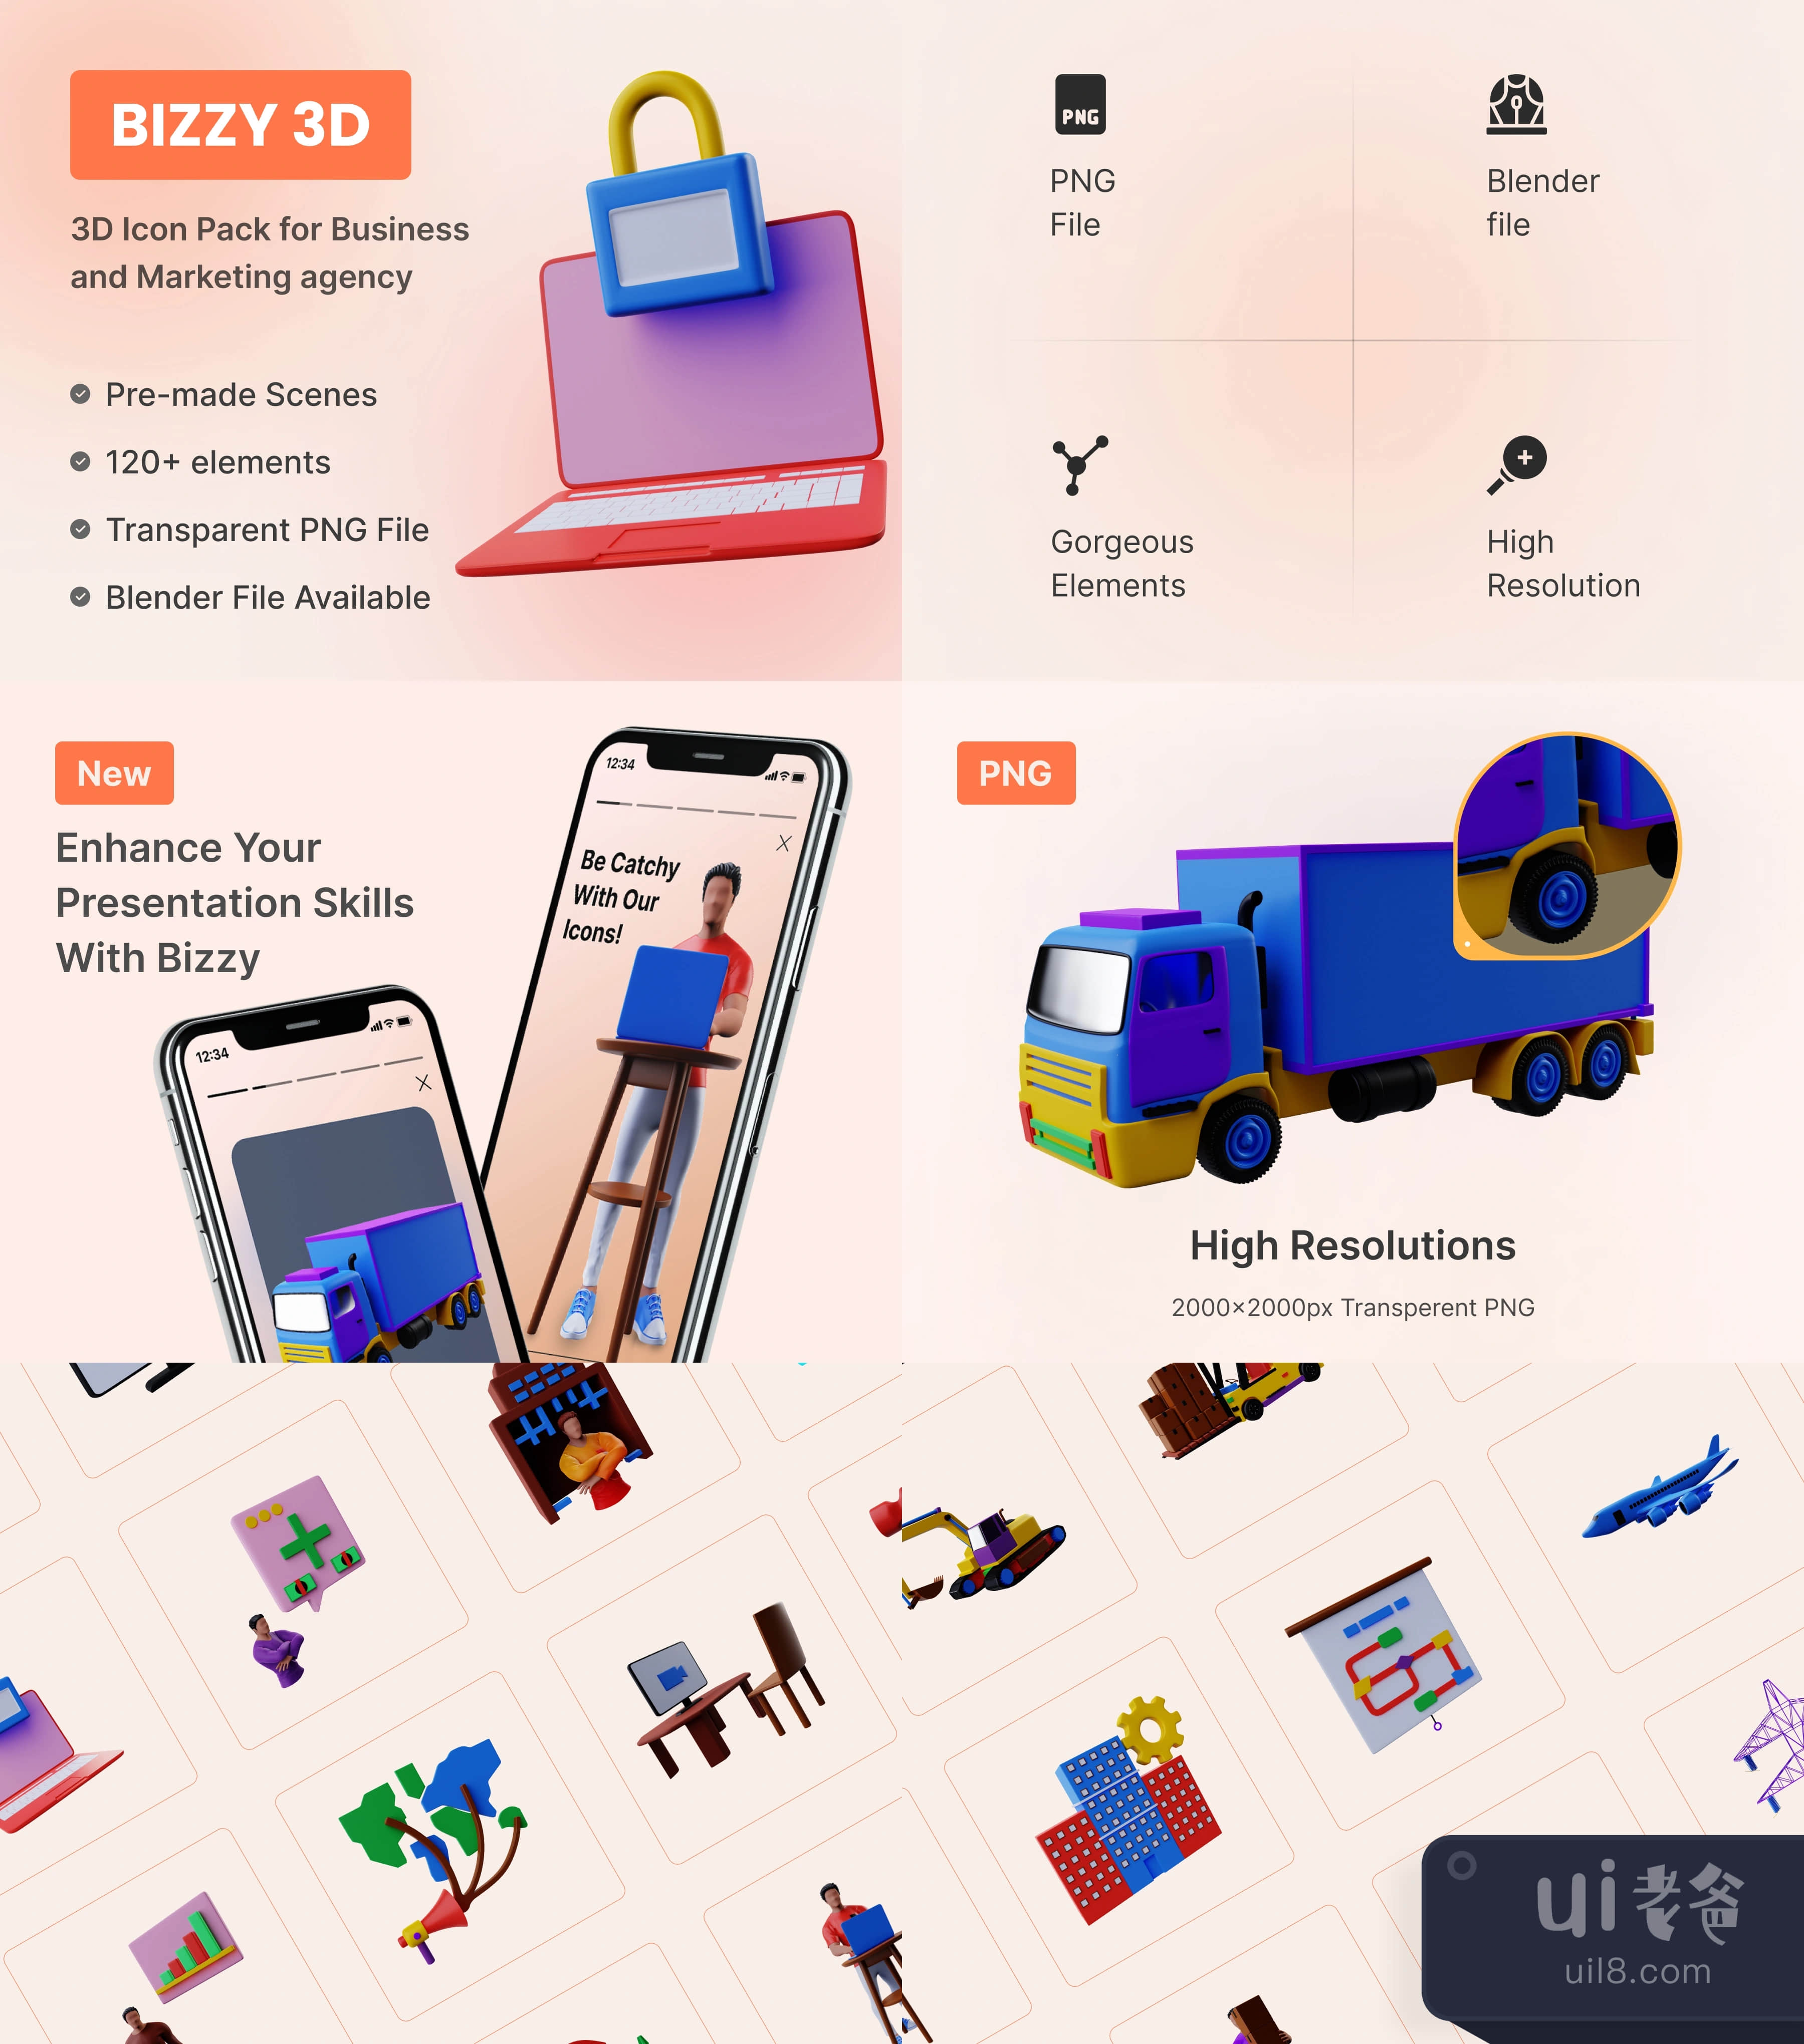 商务和营销机构的Bizzy 3D图标包 (Bizzy 3D Icon Pack for Business and Marketing agency)插图